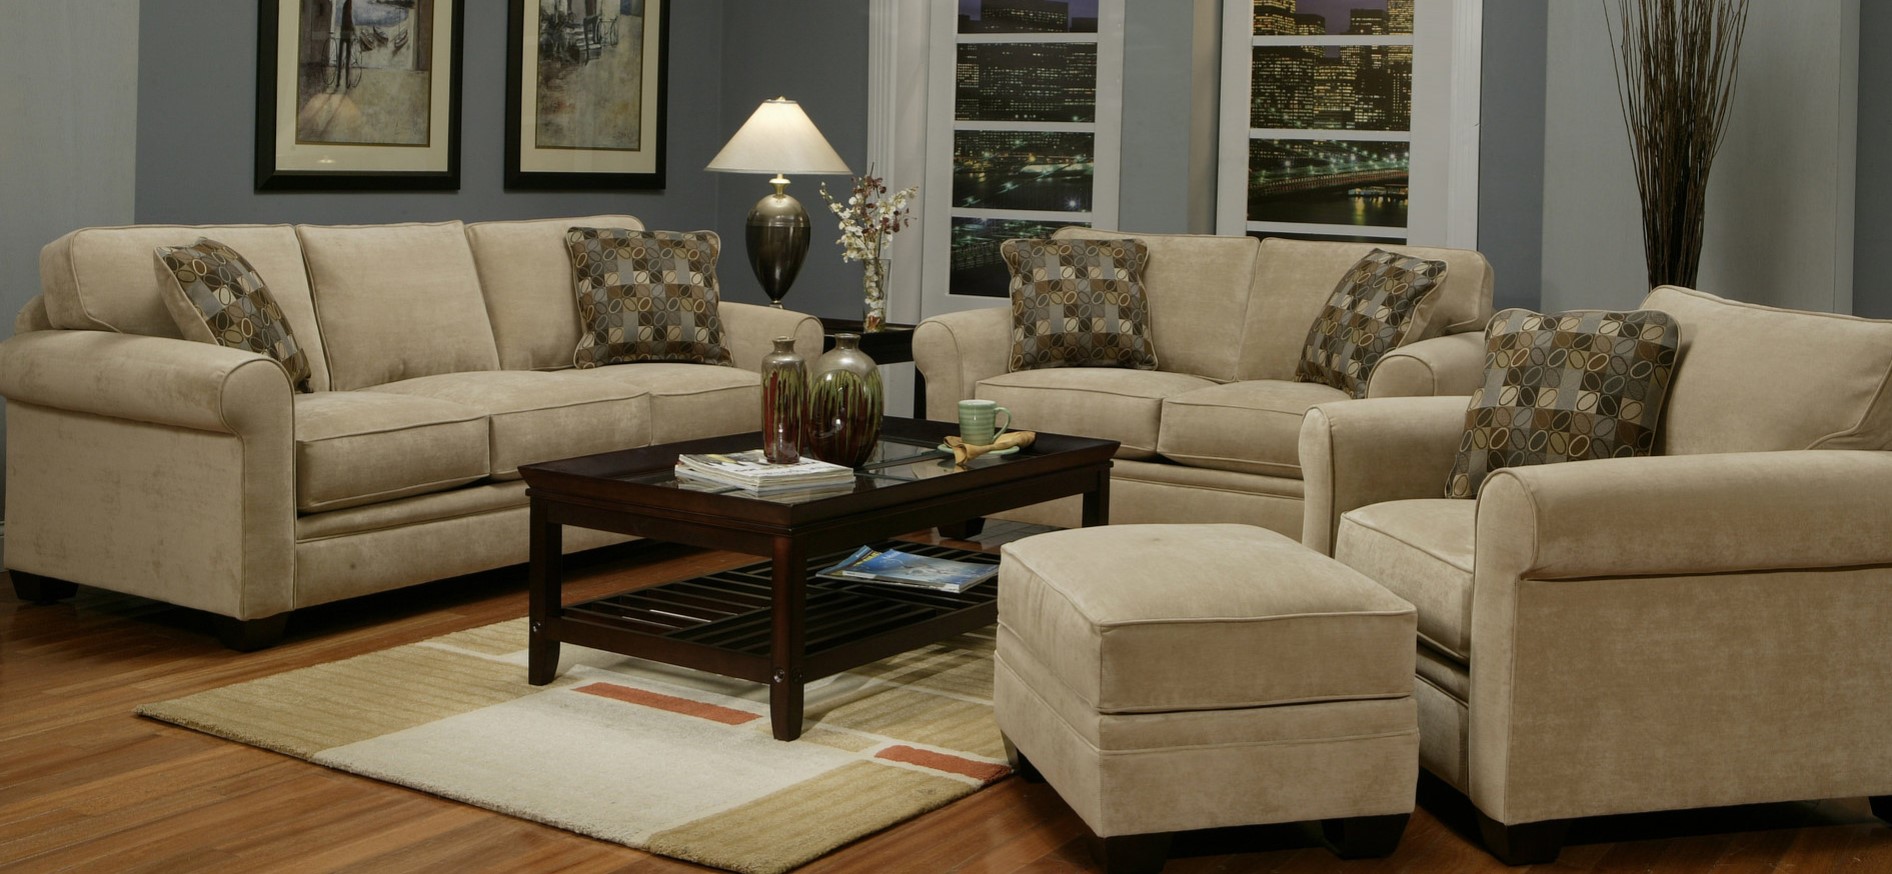 Из нескольких диванов и кресла можно создать удобную зону отдыха